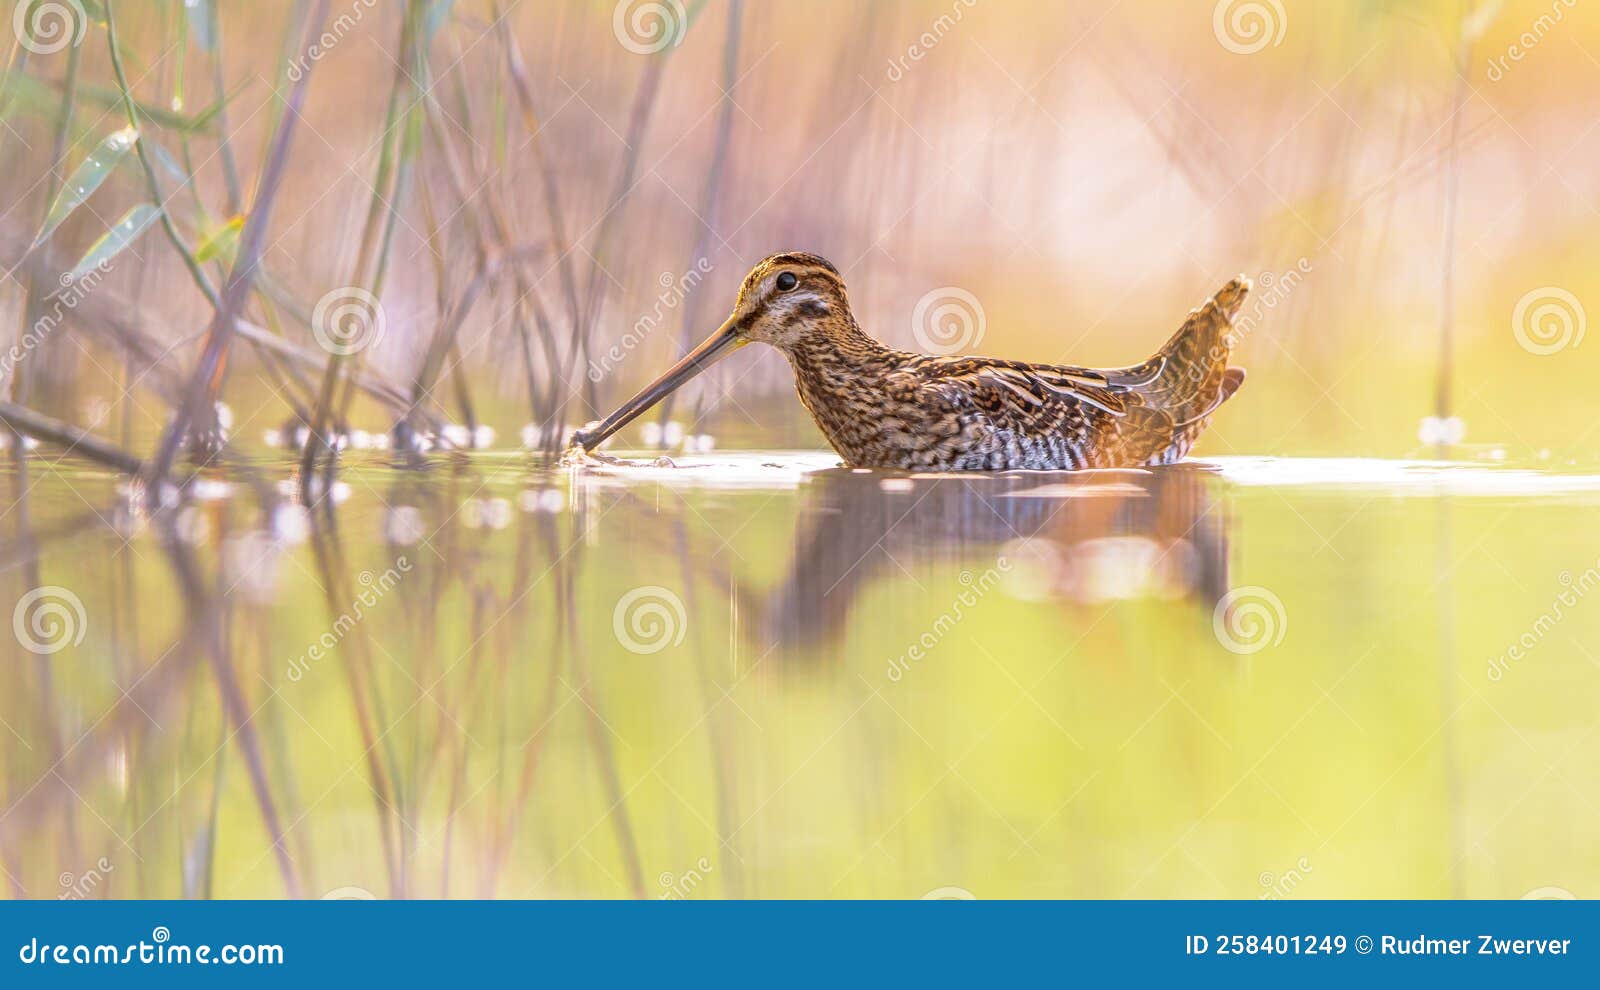 common snipe wader bird in habitat background